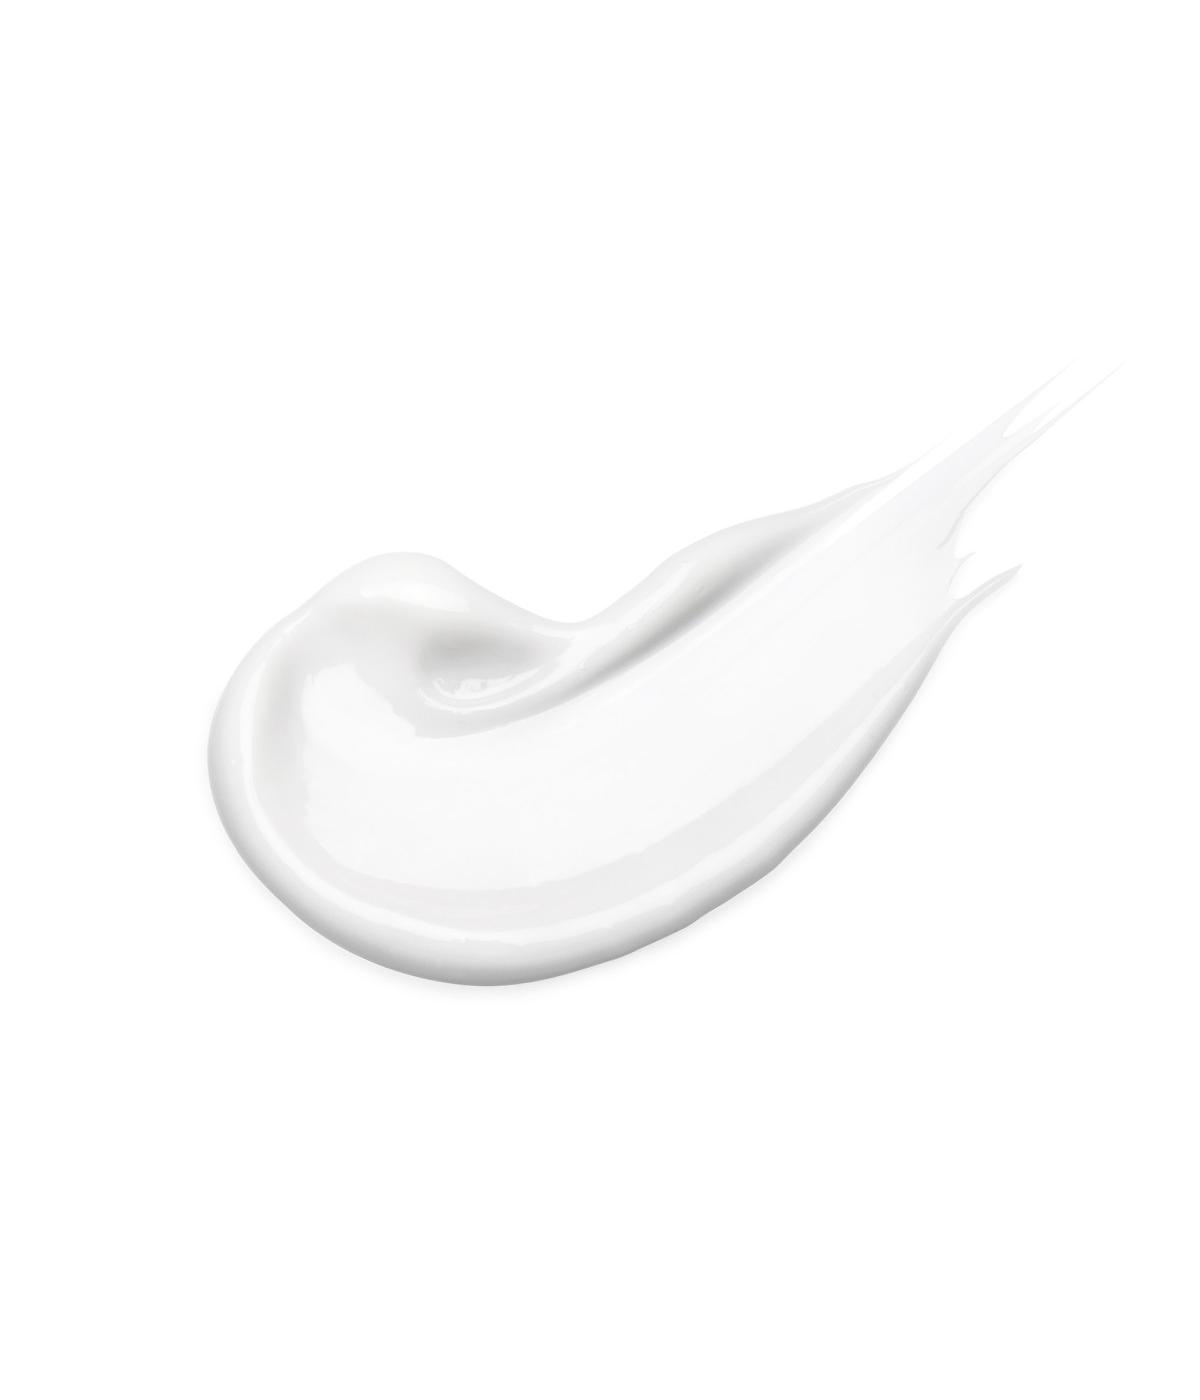 Eucerin Advanced Repair Cream; image 2 of 4